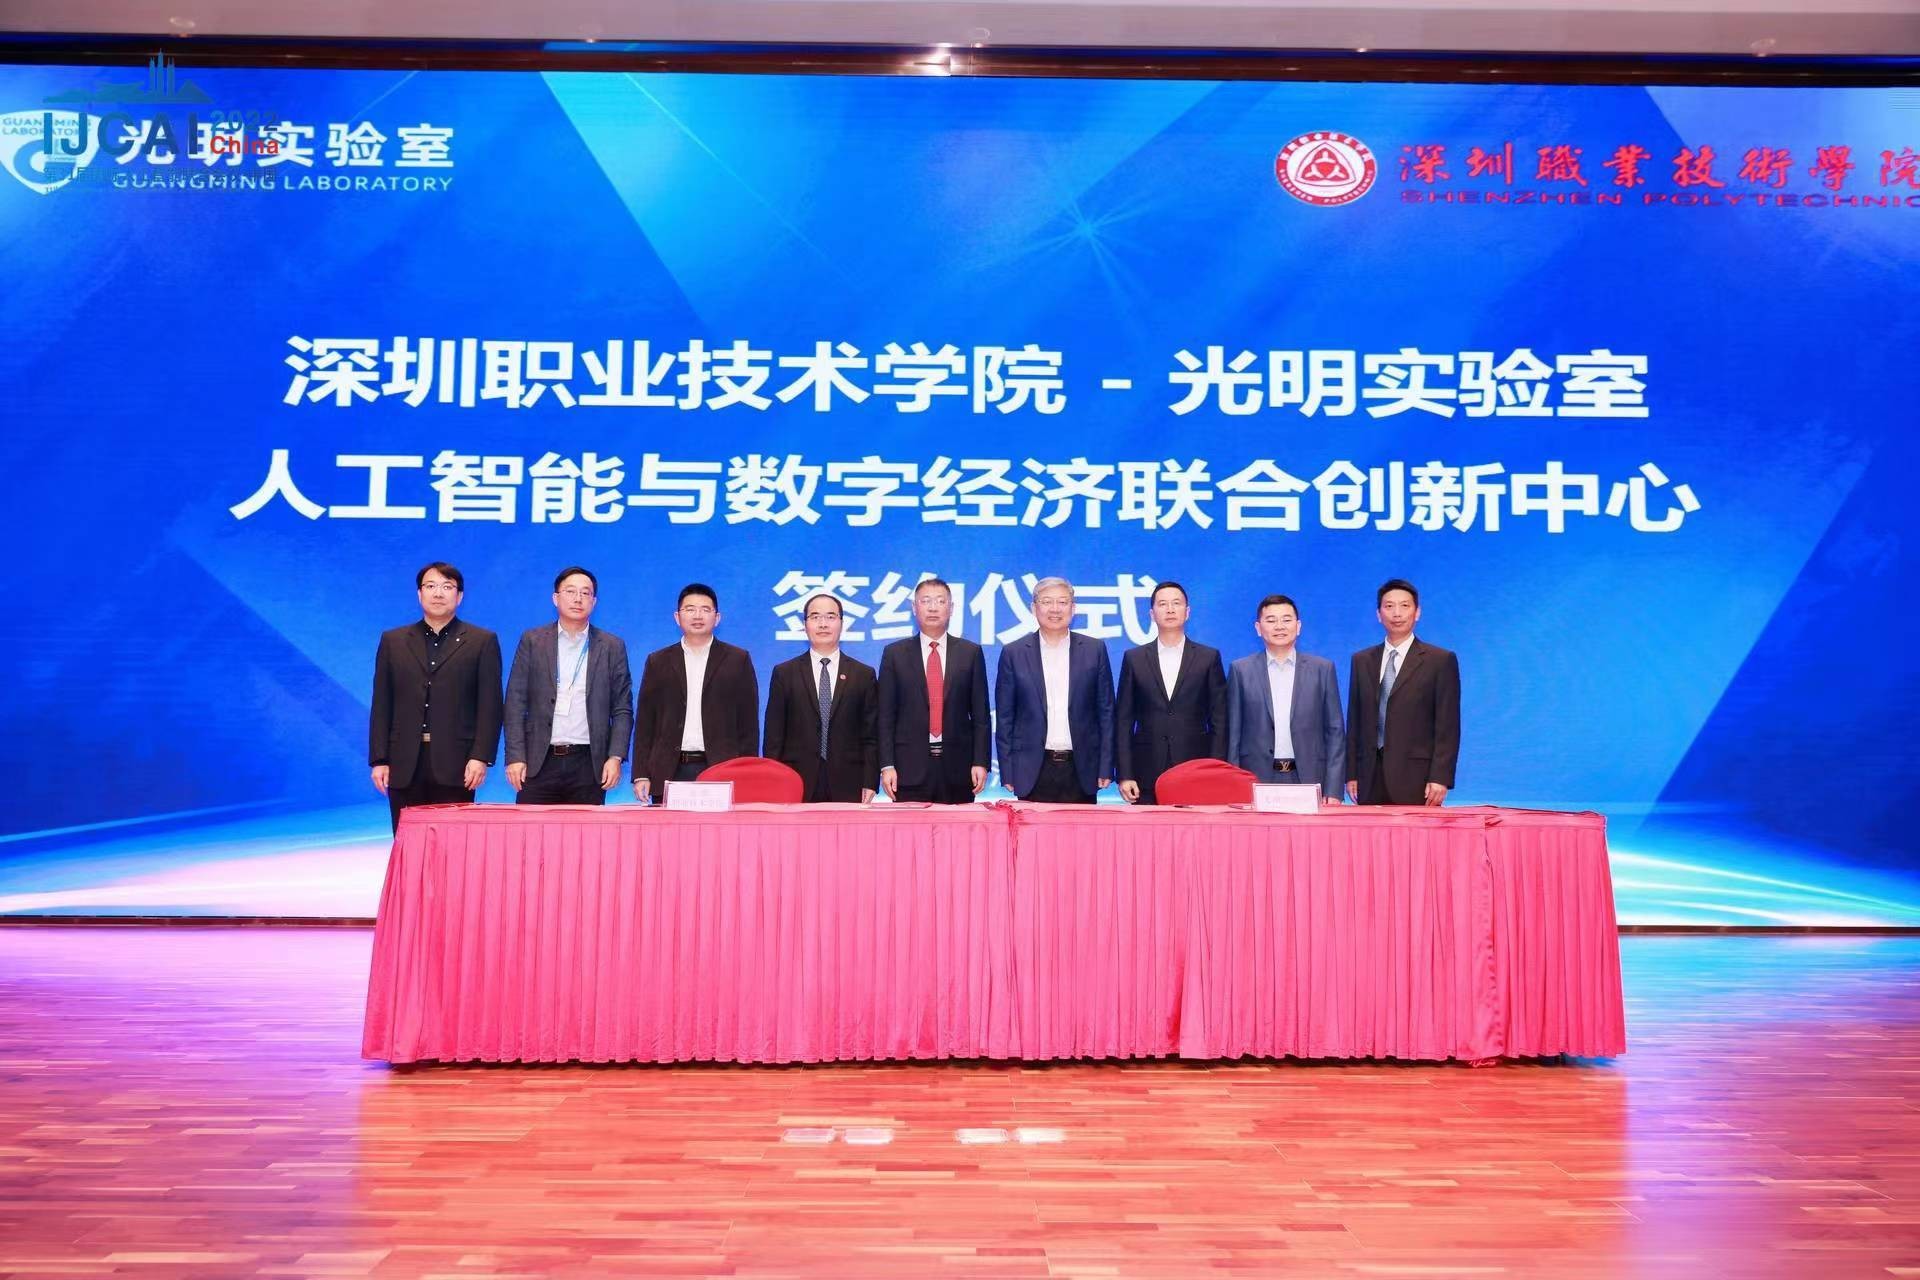 第31届国际人工智能联合会议中国会议（IJCAI 2022 China）圆满闭幕 中国日报网